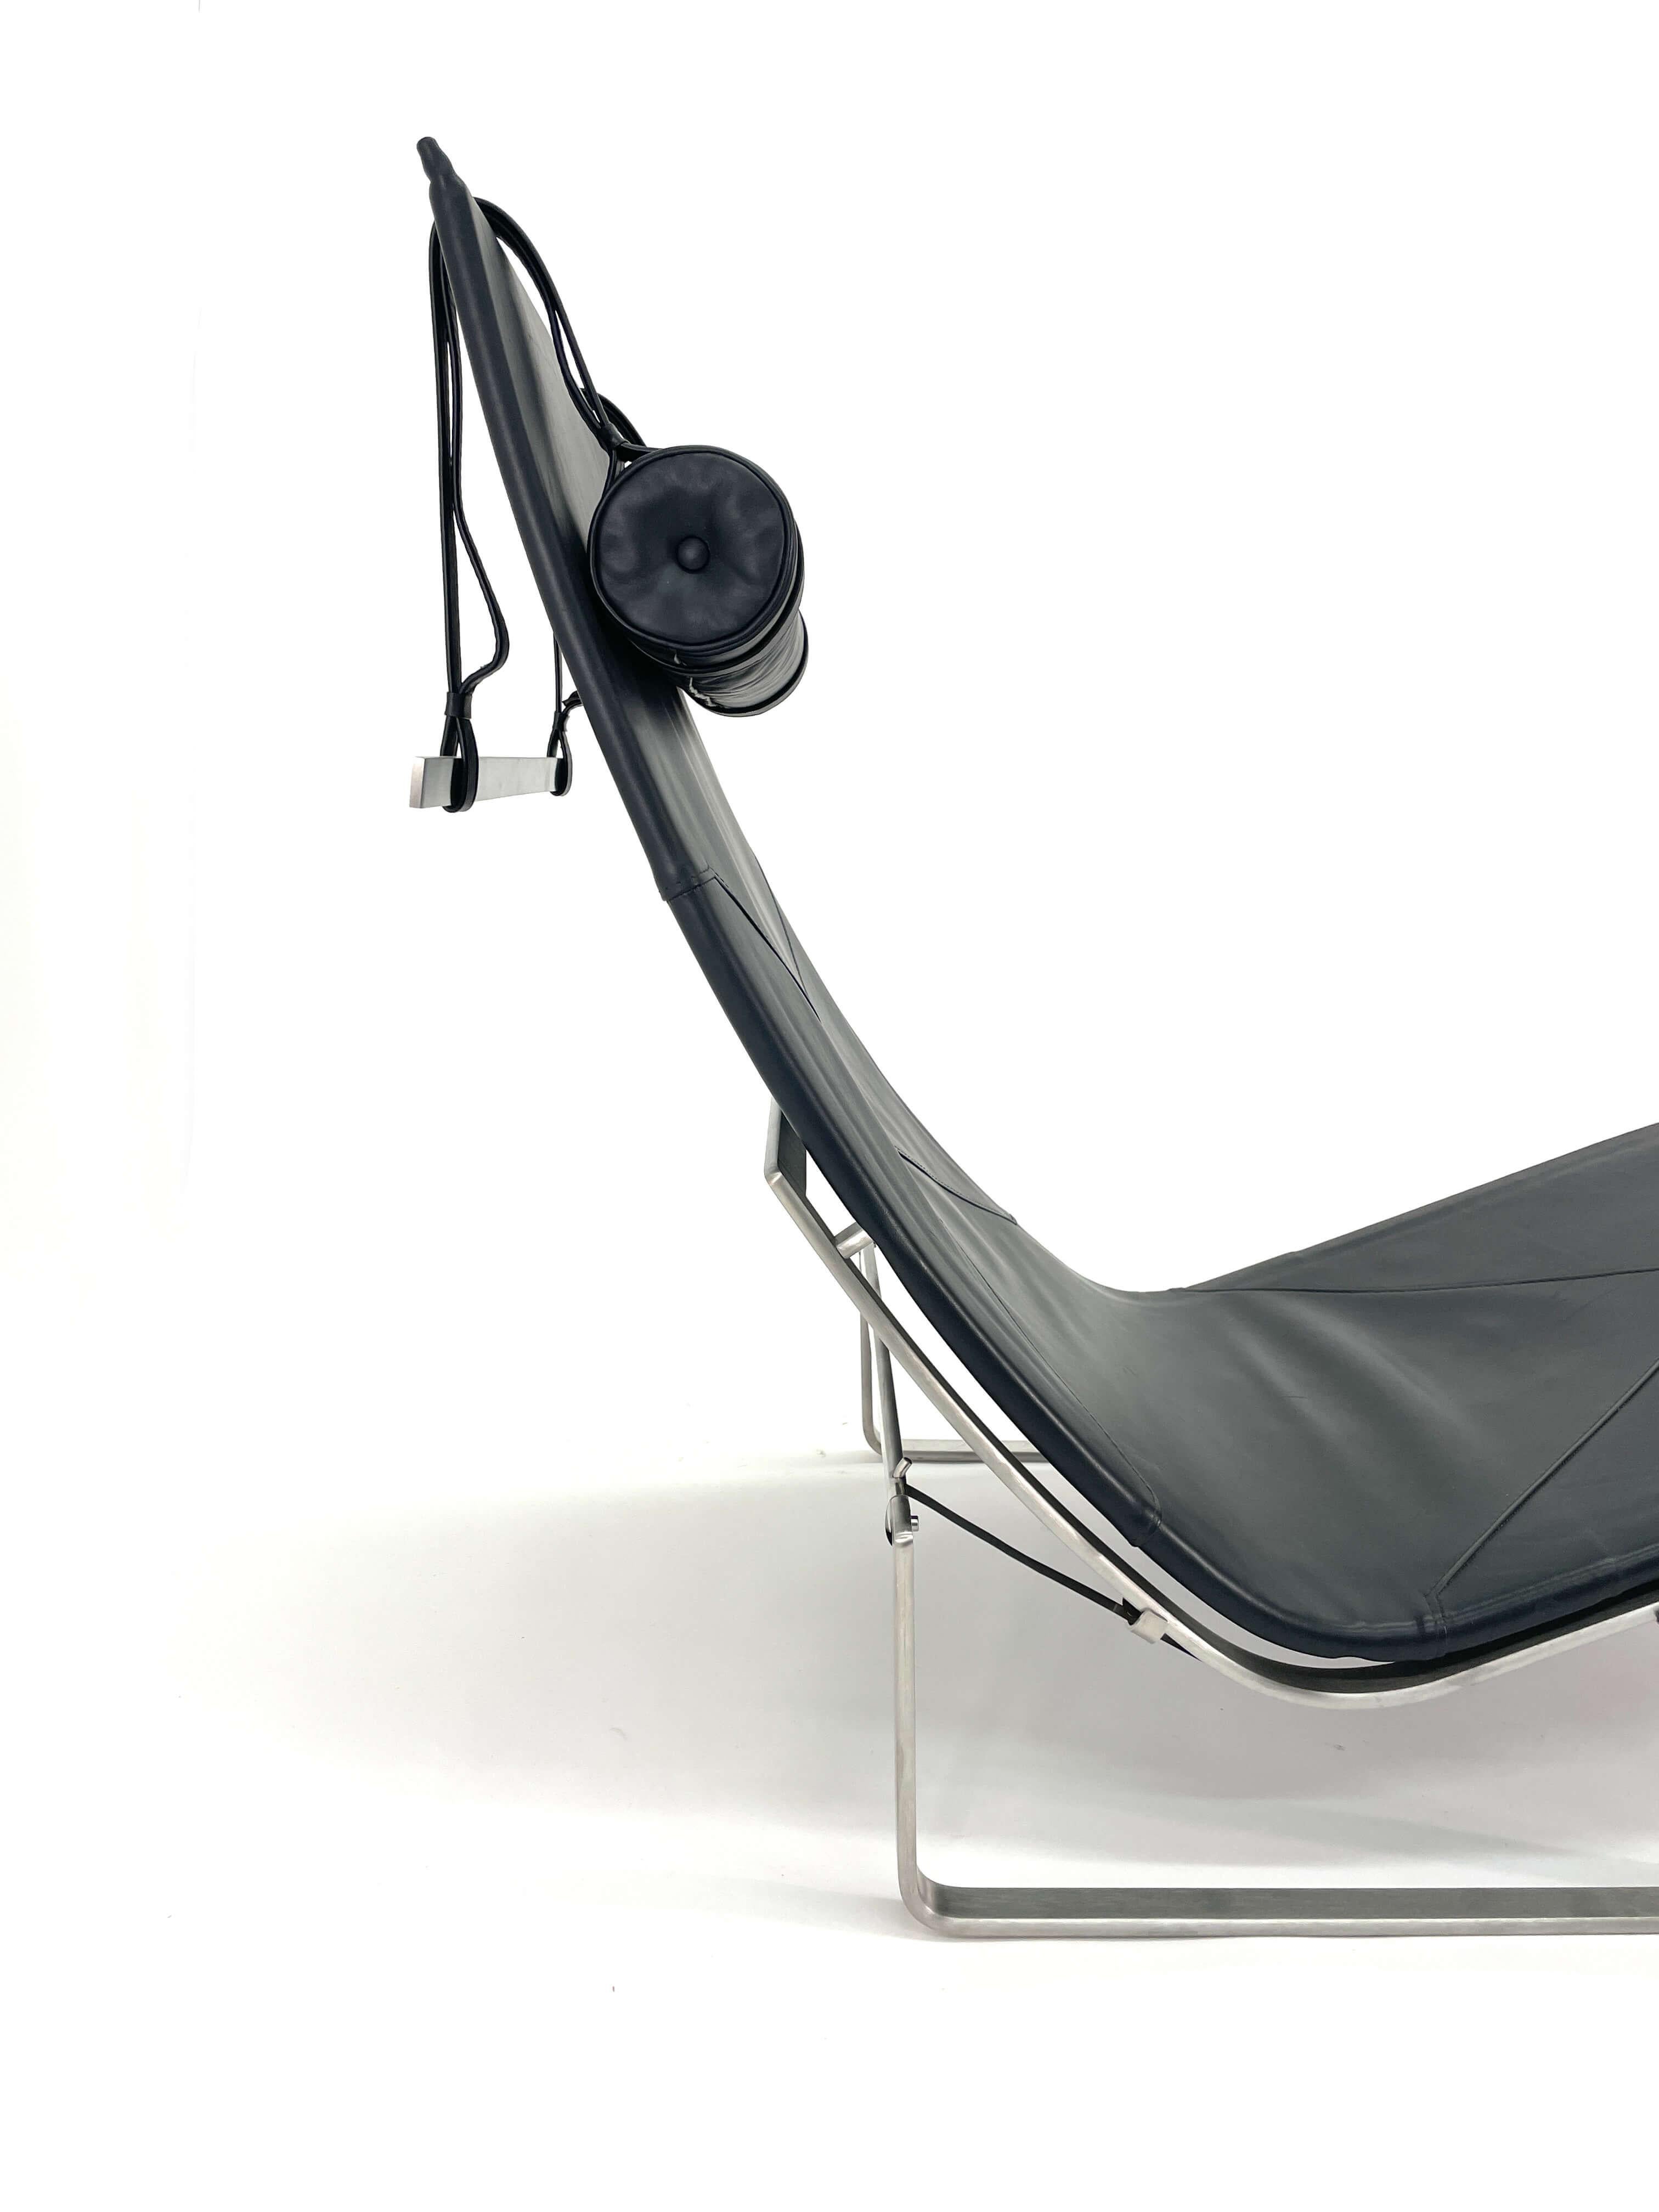 Steel Poul Kjaerholm Chaise Lounge Model PK24 for Fritz Hansen For Sale